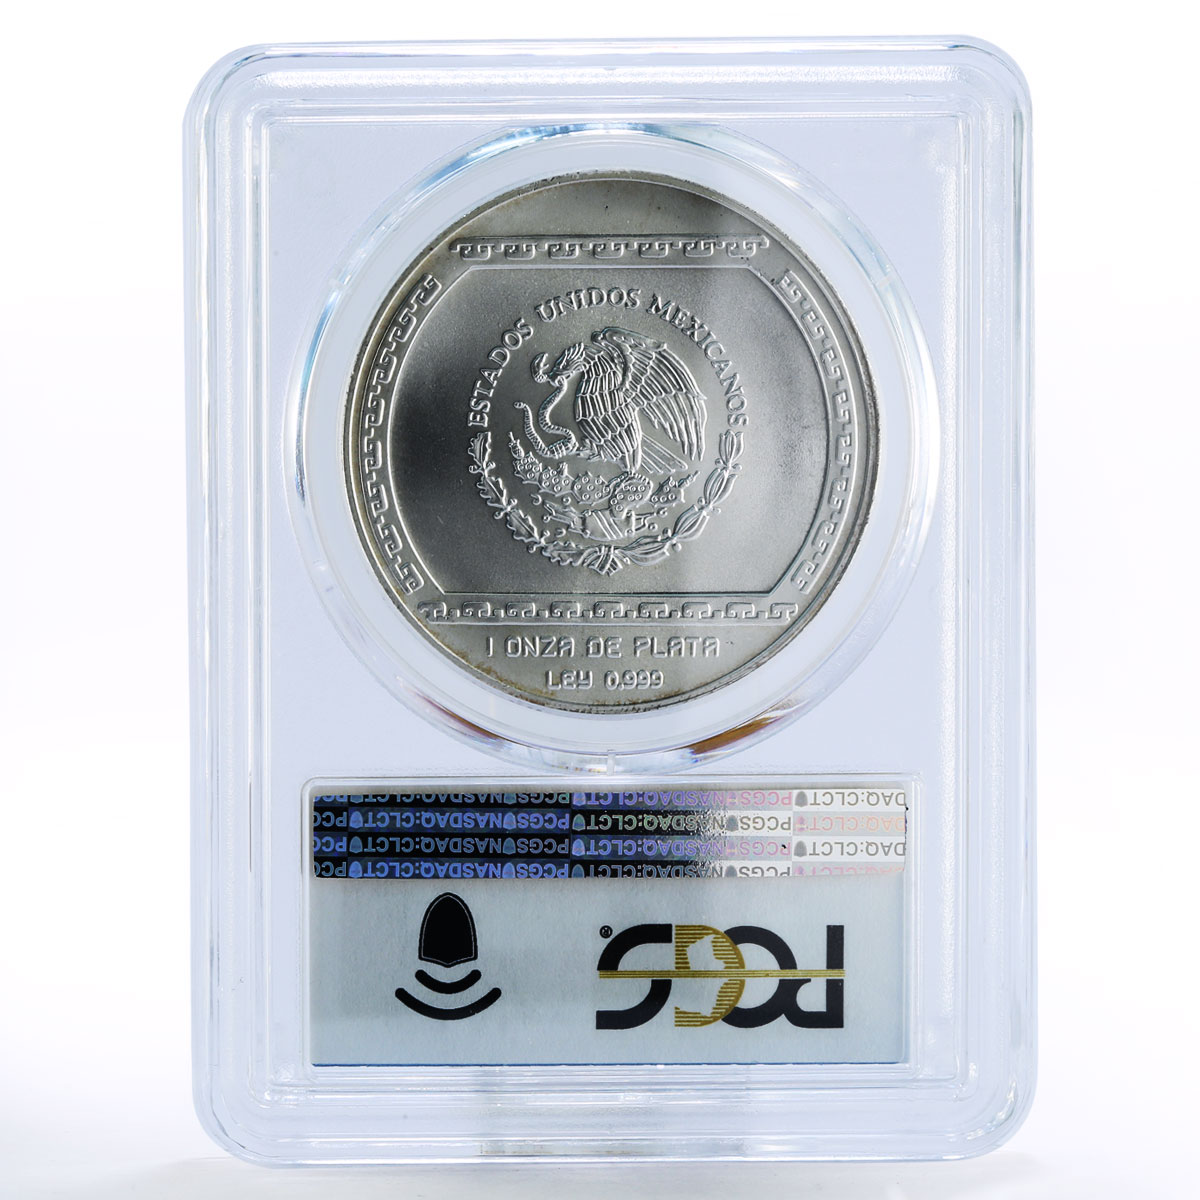 Mexico 5 pesos Precolombina Bajo de el Tajin MS68 PCGS silver coin 1993